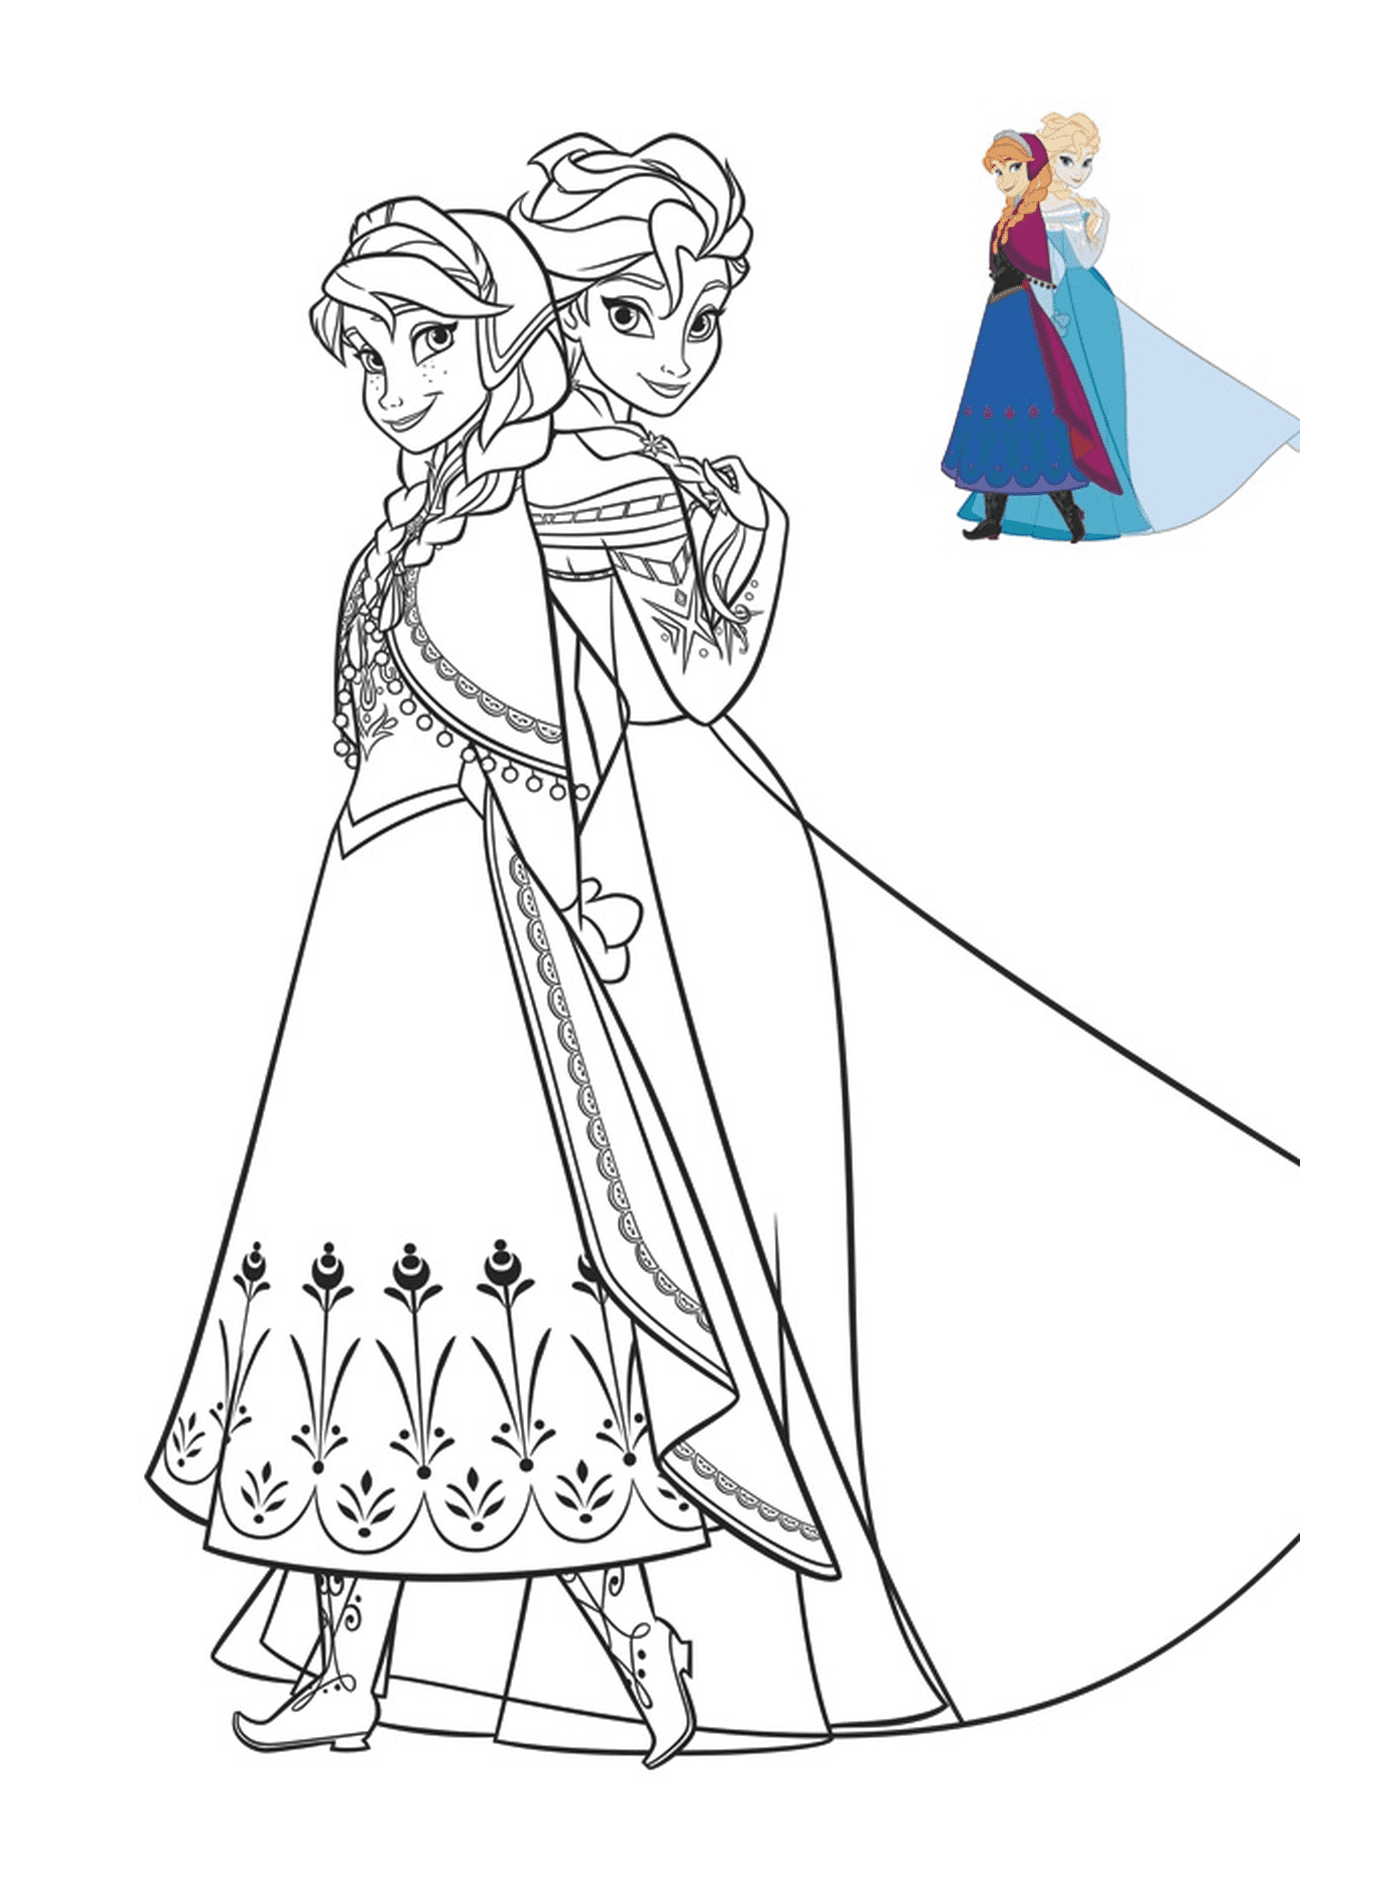  Anna und Elsa in schönen Kleidern 